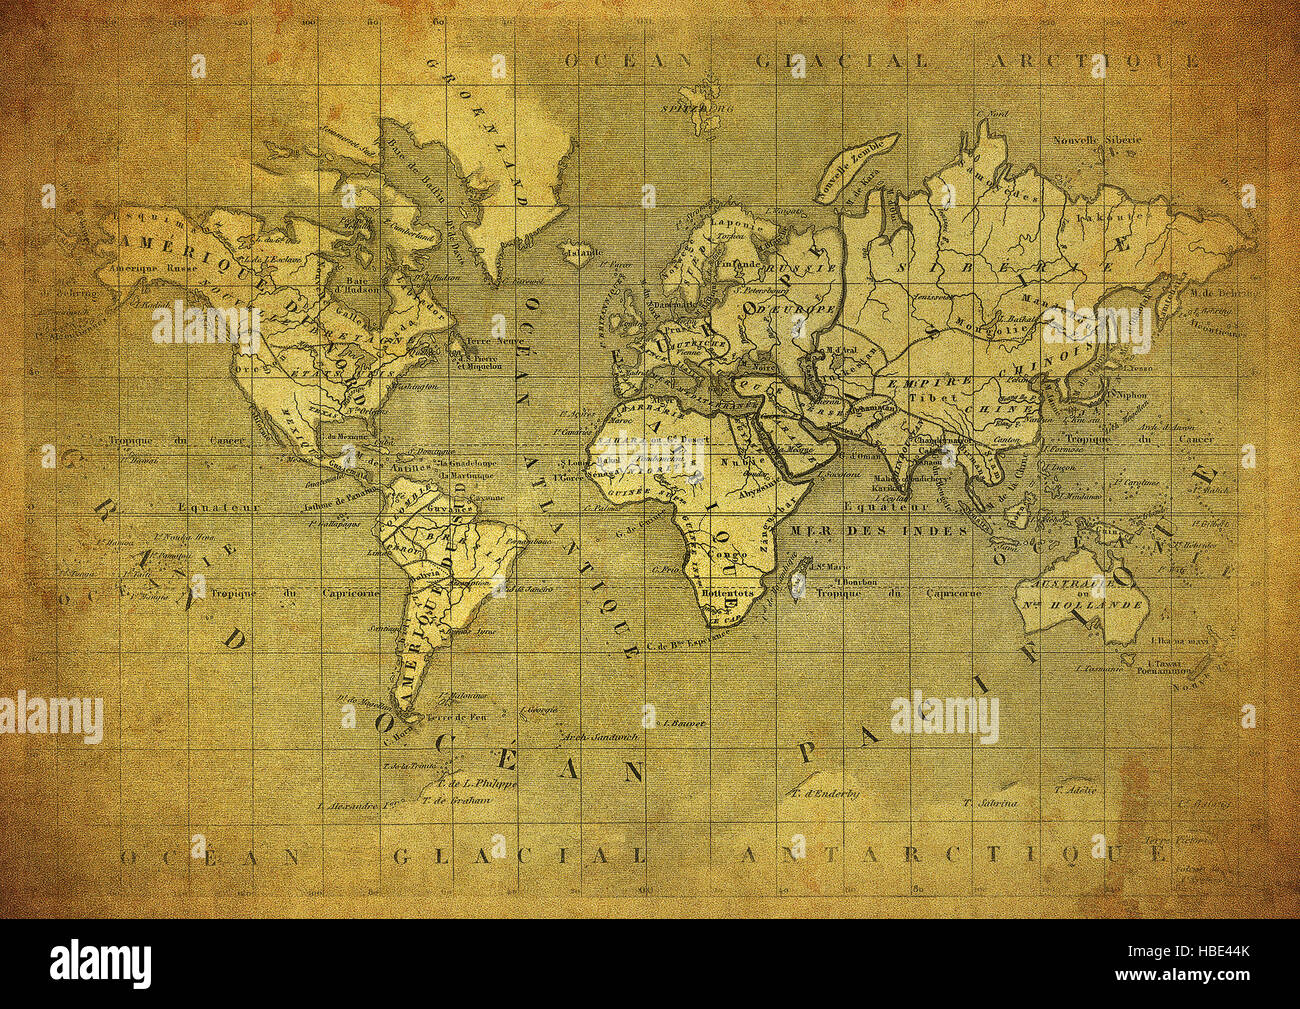 Vintage mapa del mundo publicado en 1847 Foto de stock